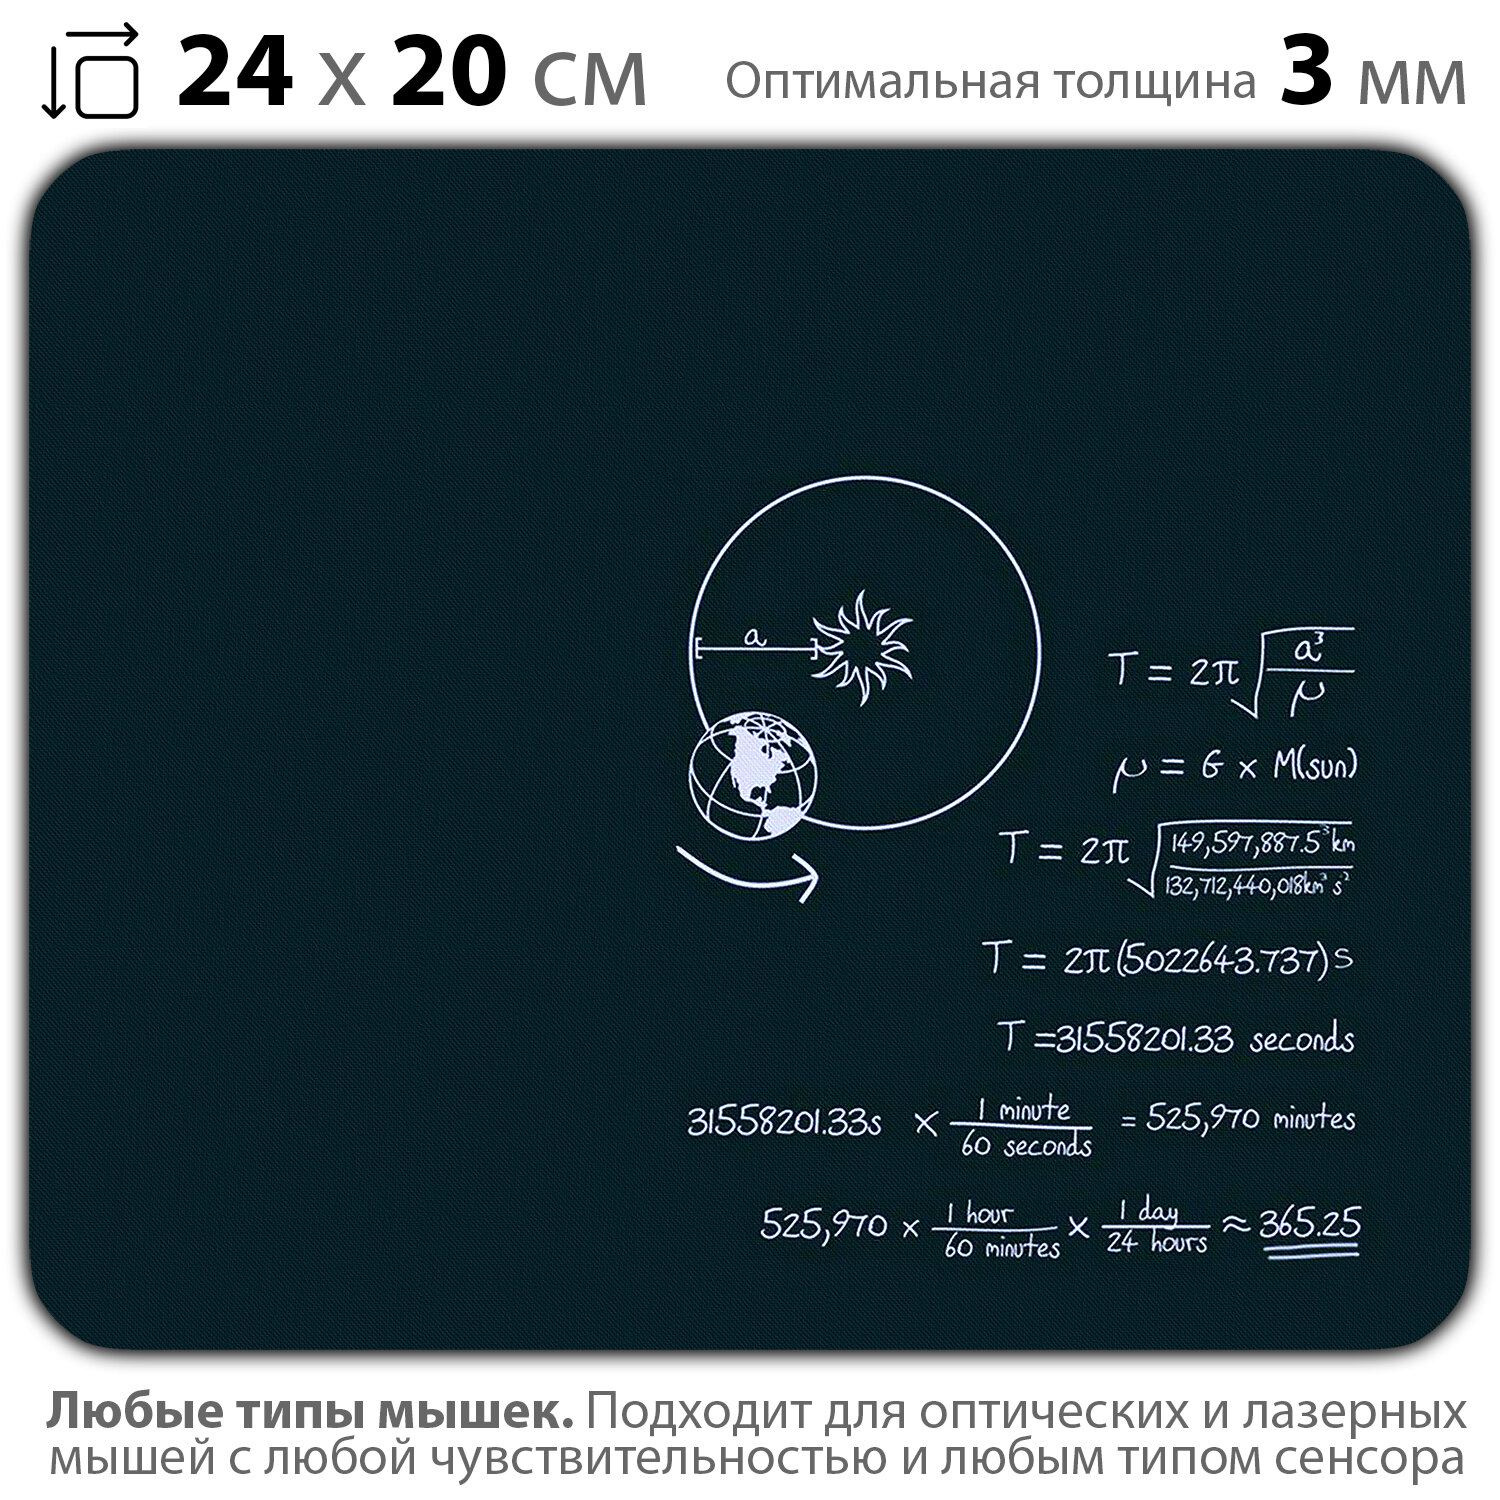 Коврик для мыши "Формула на школьной доске" (24 x 20 см x 3 мм)